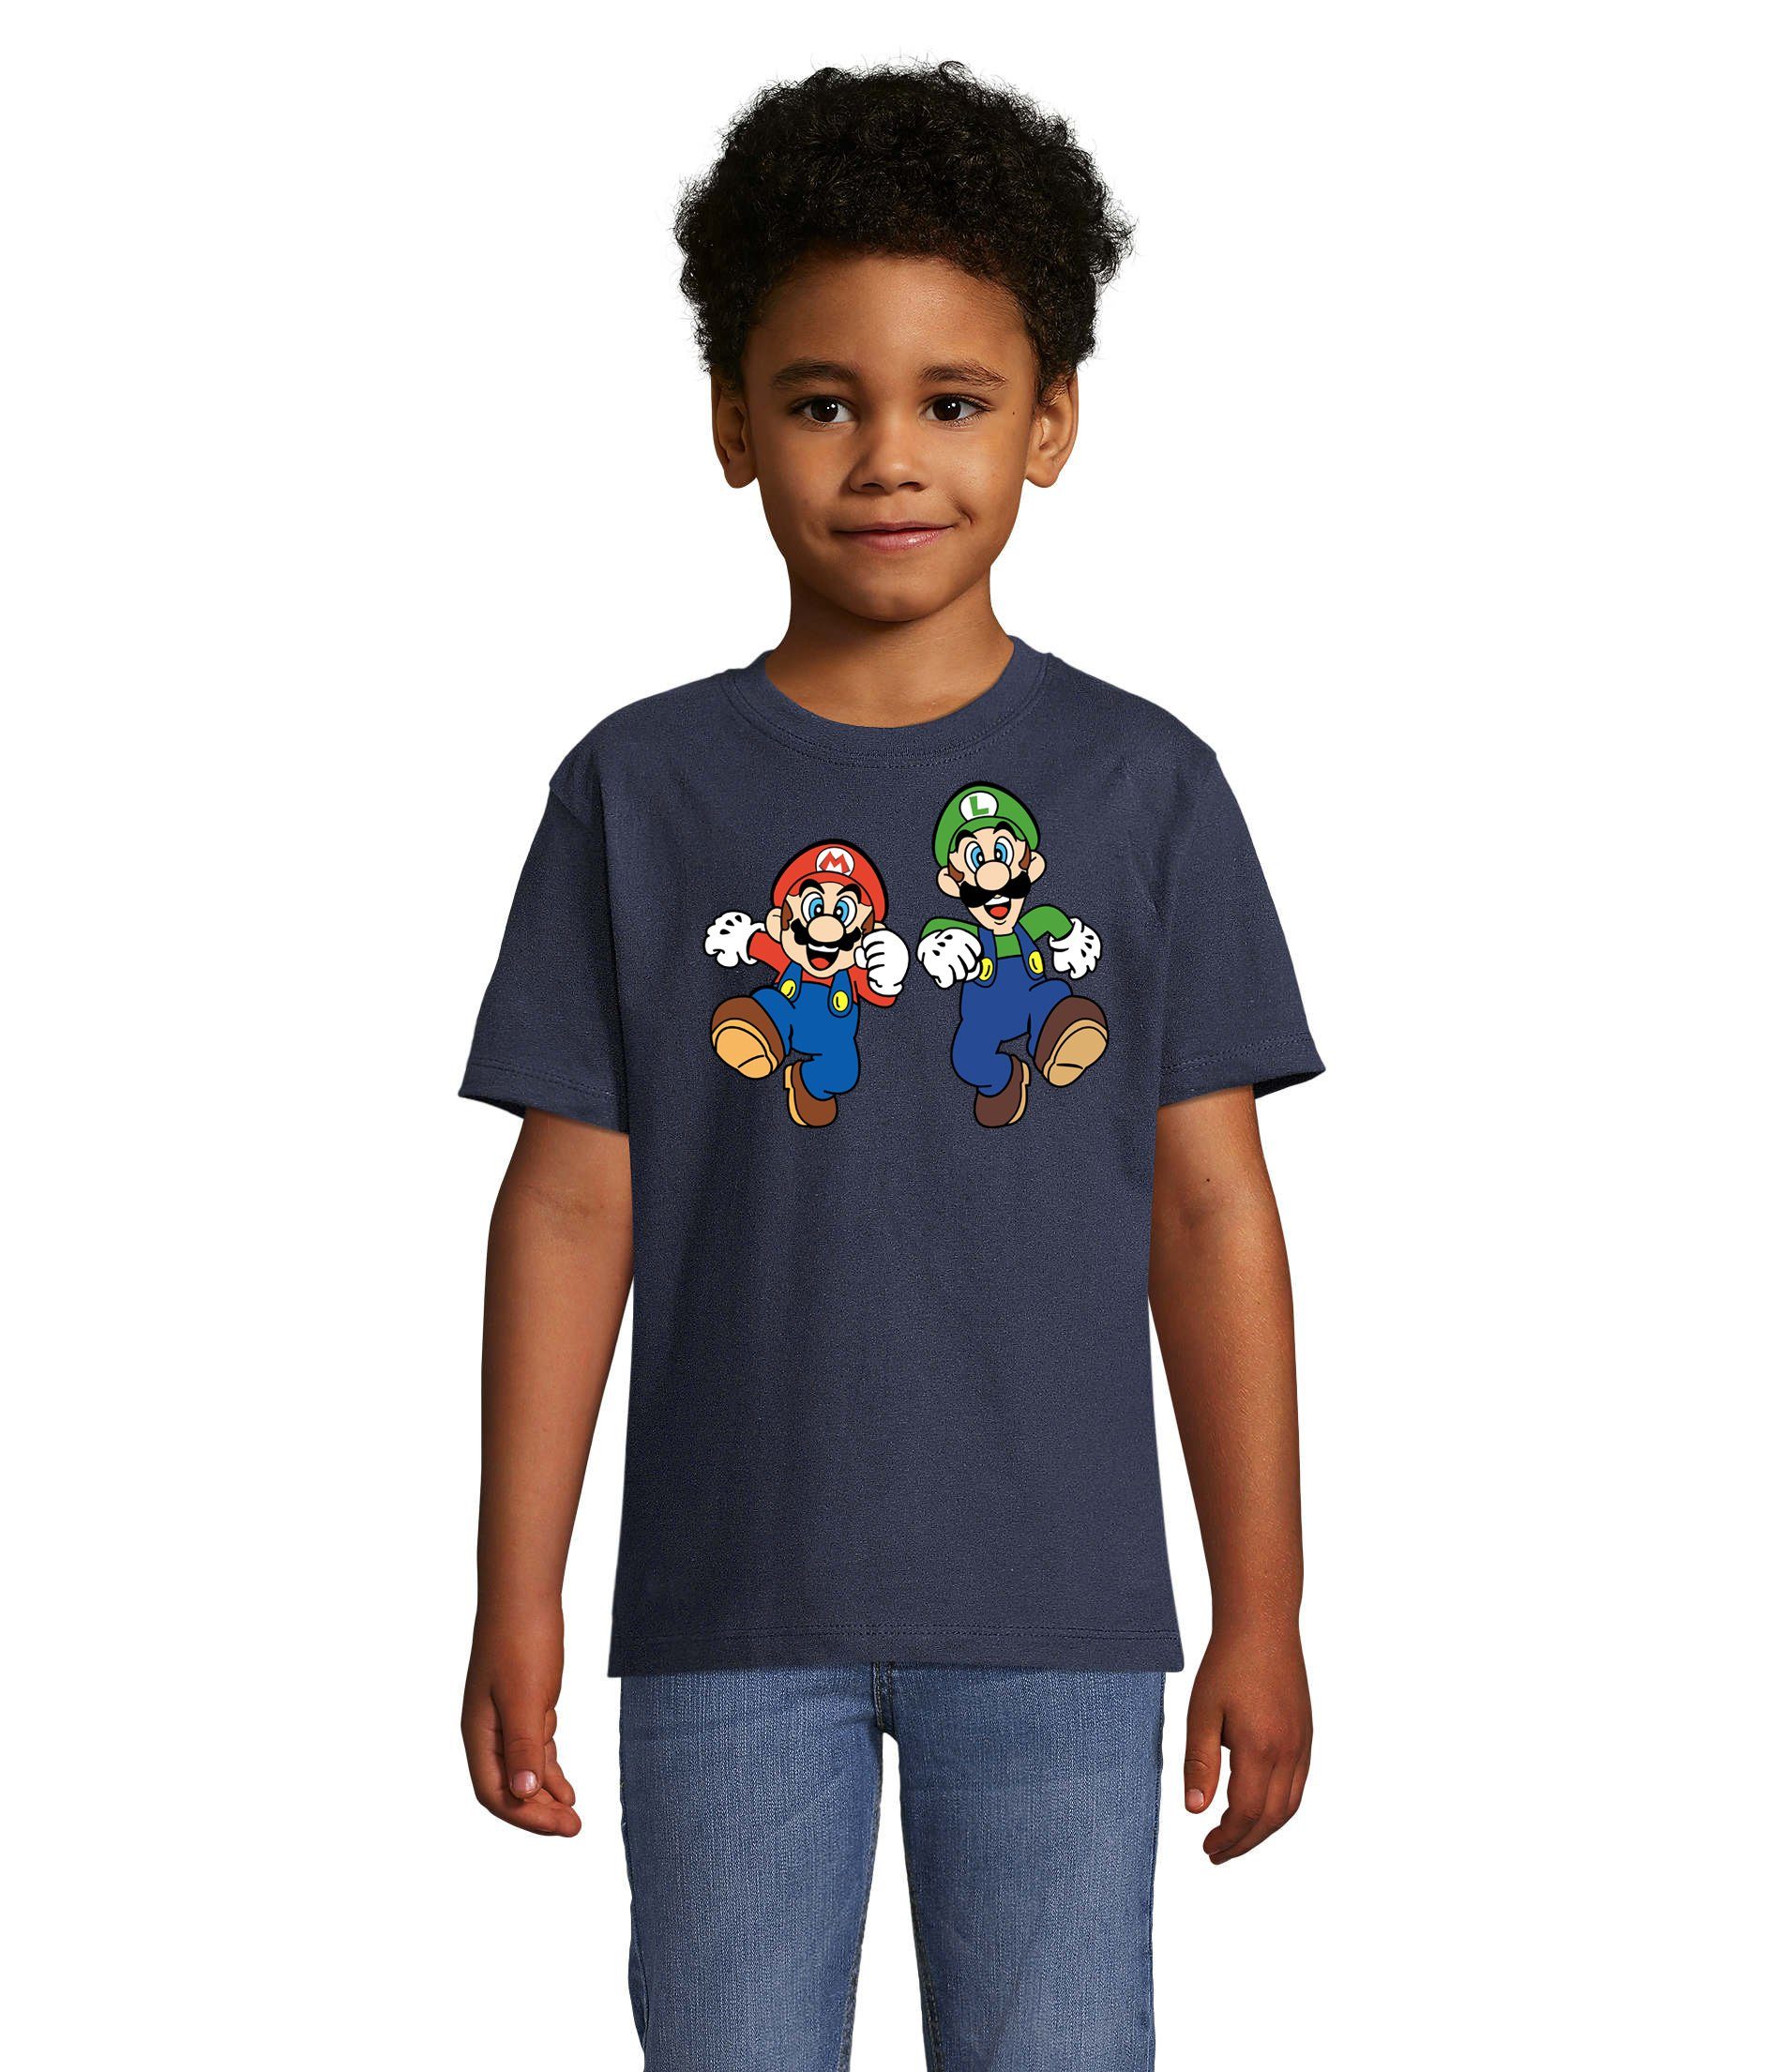 T-Shirt Bowser Brownie Gamer Luigi Game & Blondie Konsole Yoshi Nintendo Mario Navyblau Kinder &